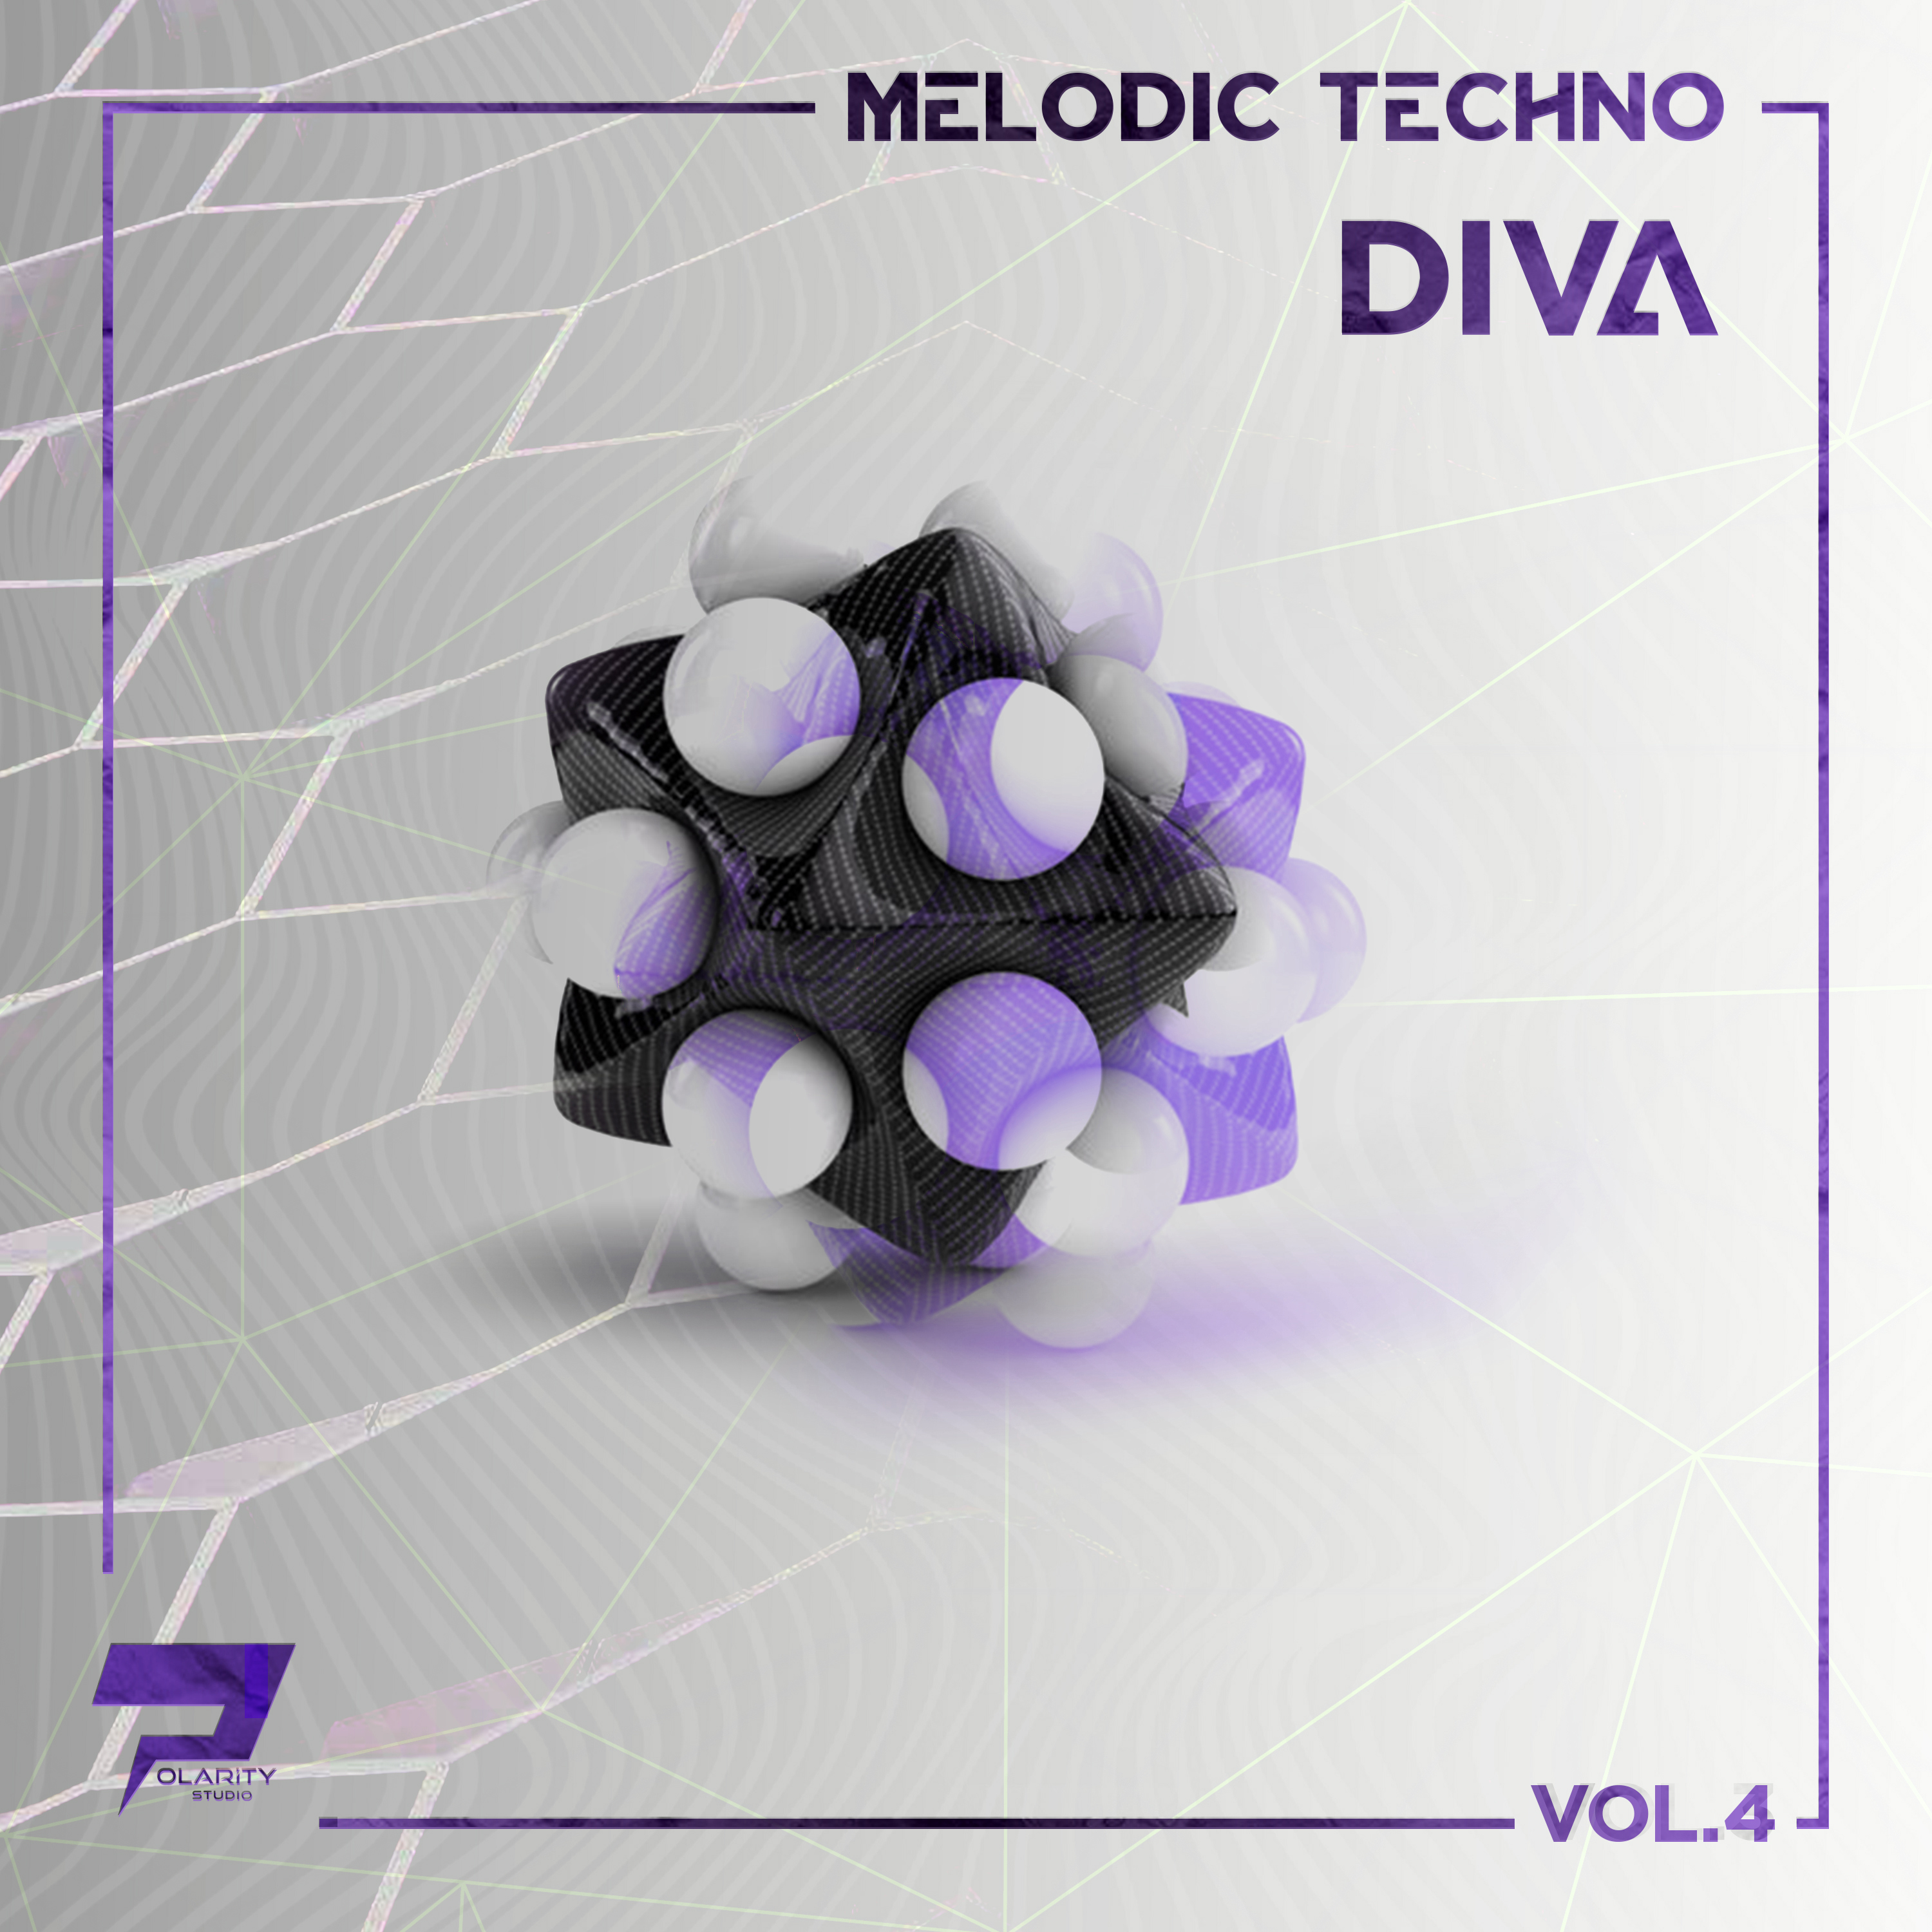 Polarity Studio - Melodic Techo - Diva Vol. 4